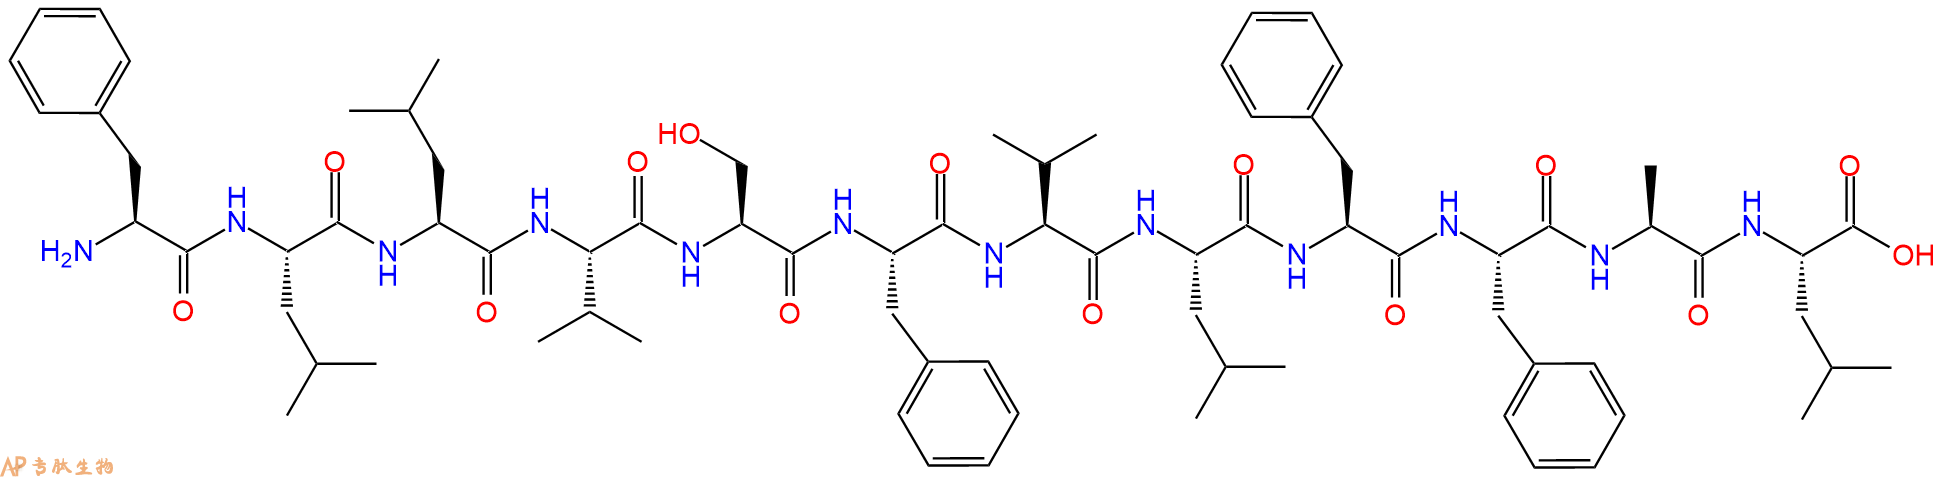 专肽生物产品H2N-Phe-Leu-Leu-Val-Ser-Phe-Val-Leu-Phe-Phe-Ala-Le